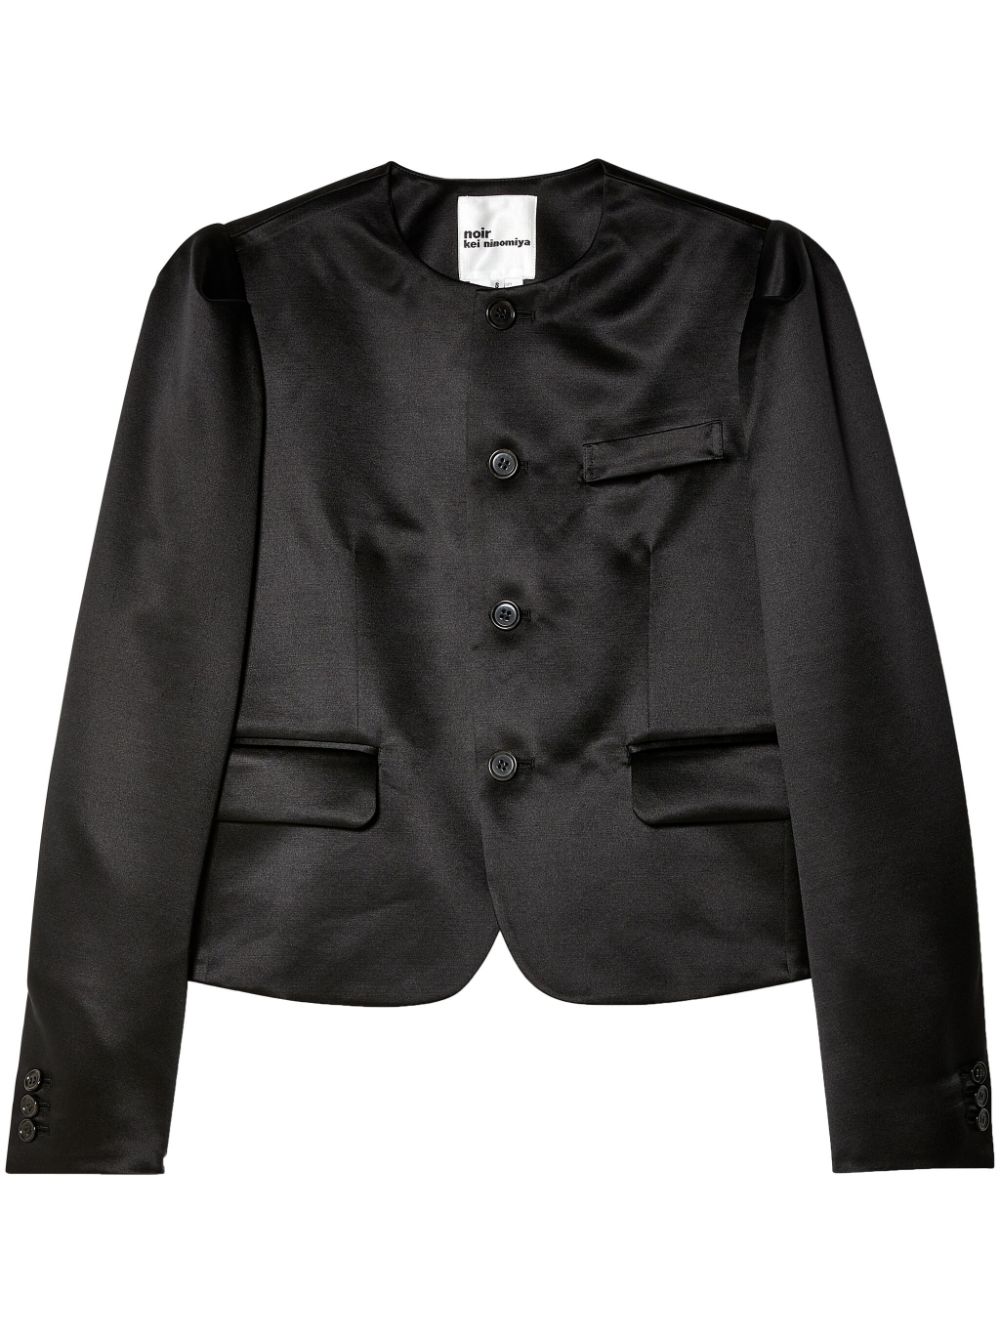 Noir Kei Ninomiya button-up cropped jacket - Black von Noir Kei Ninomiya